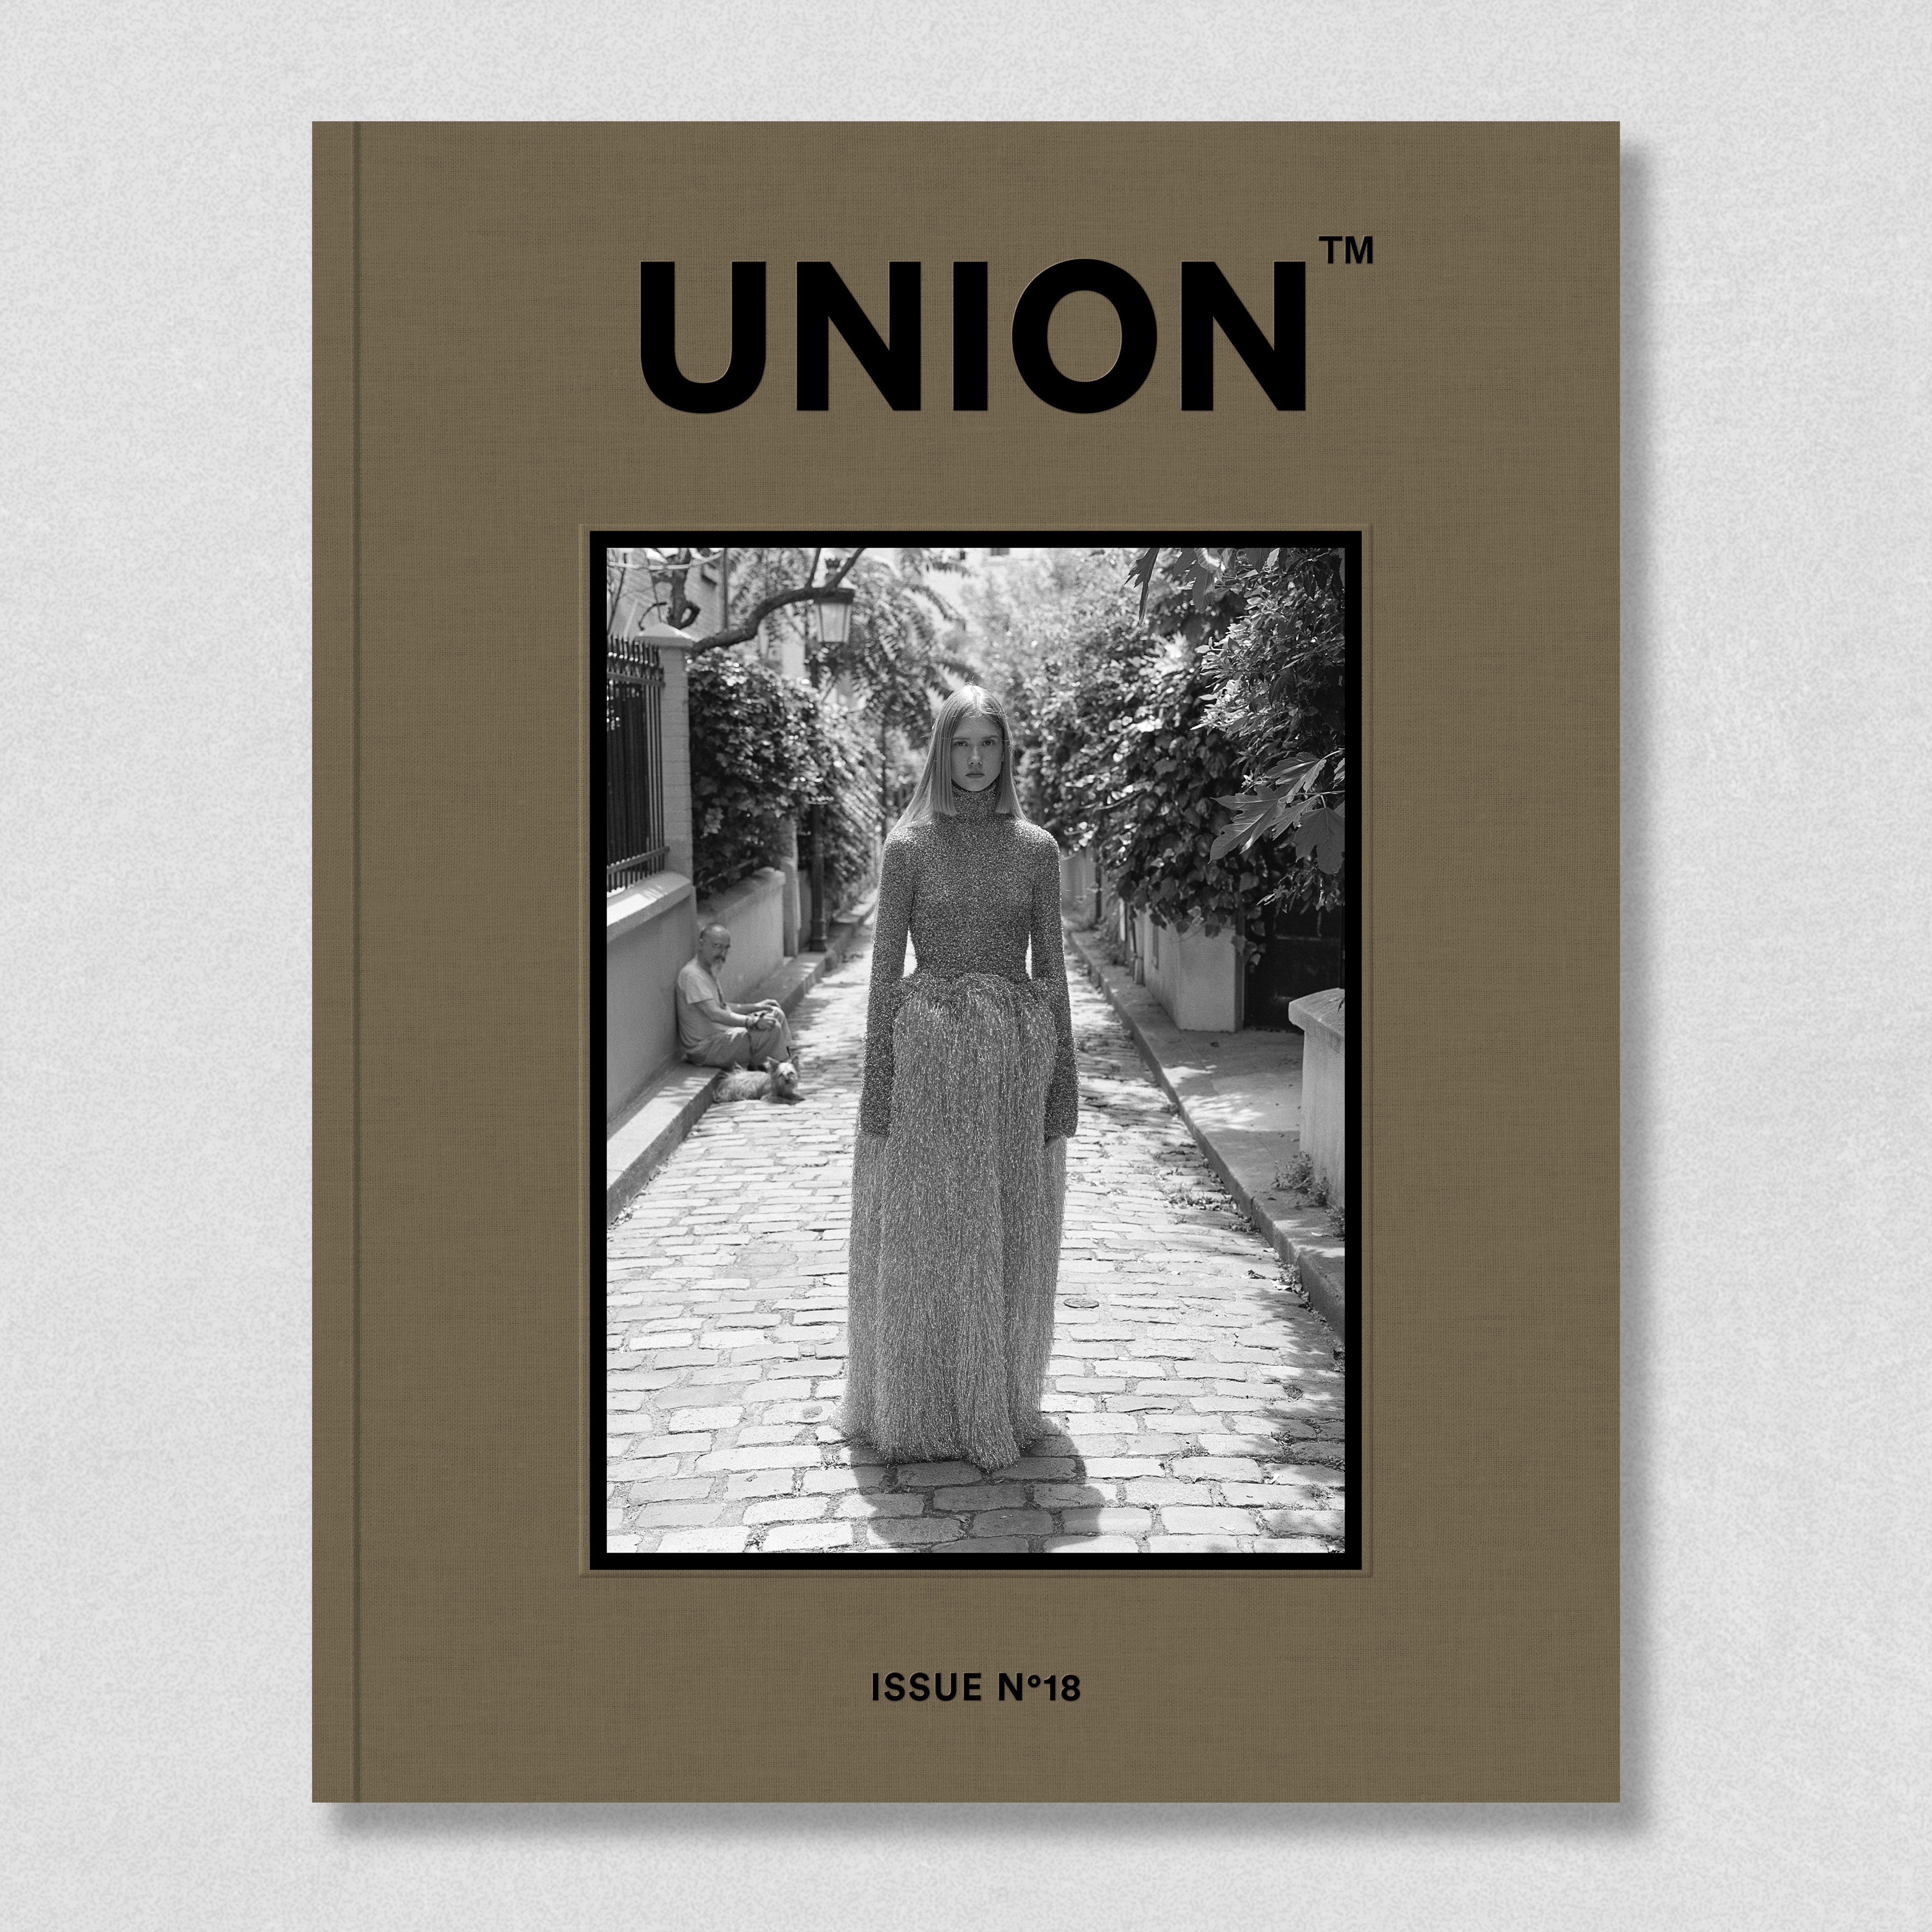 Union #18 – UNION MAGAZINE